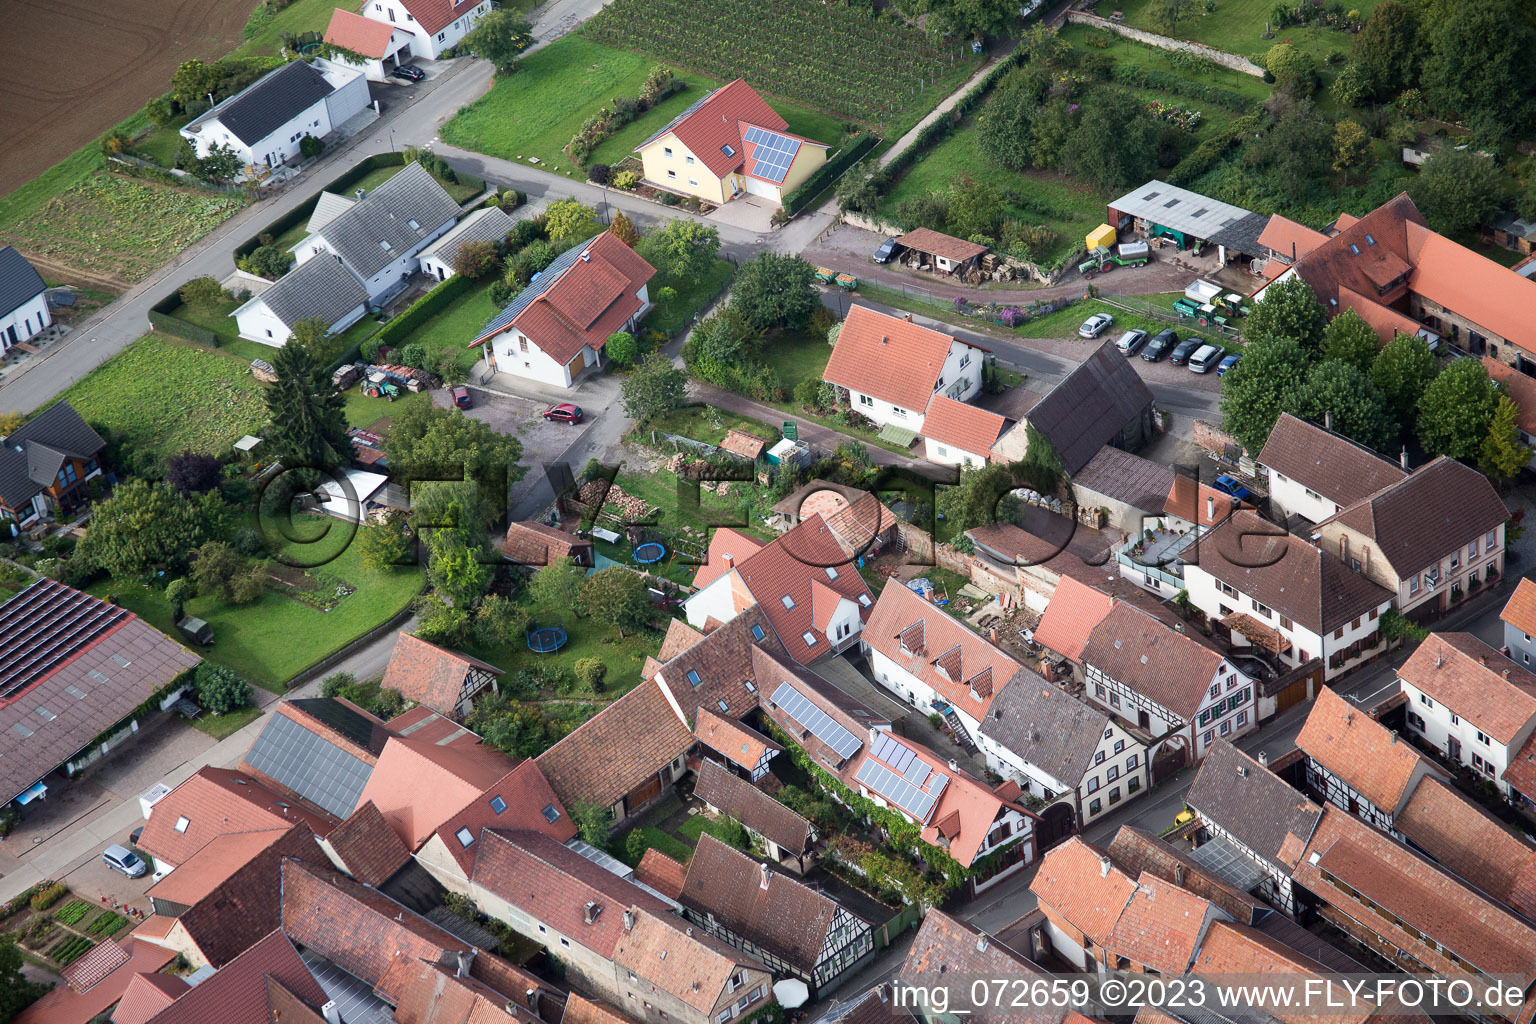 Quartier Heuchelheim in Heuchelheim-Klingen dans le département Rhénanie-Palatinat, Allemagne vue d'en haut